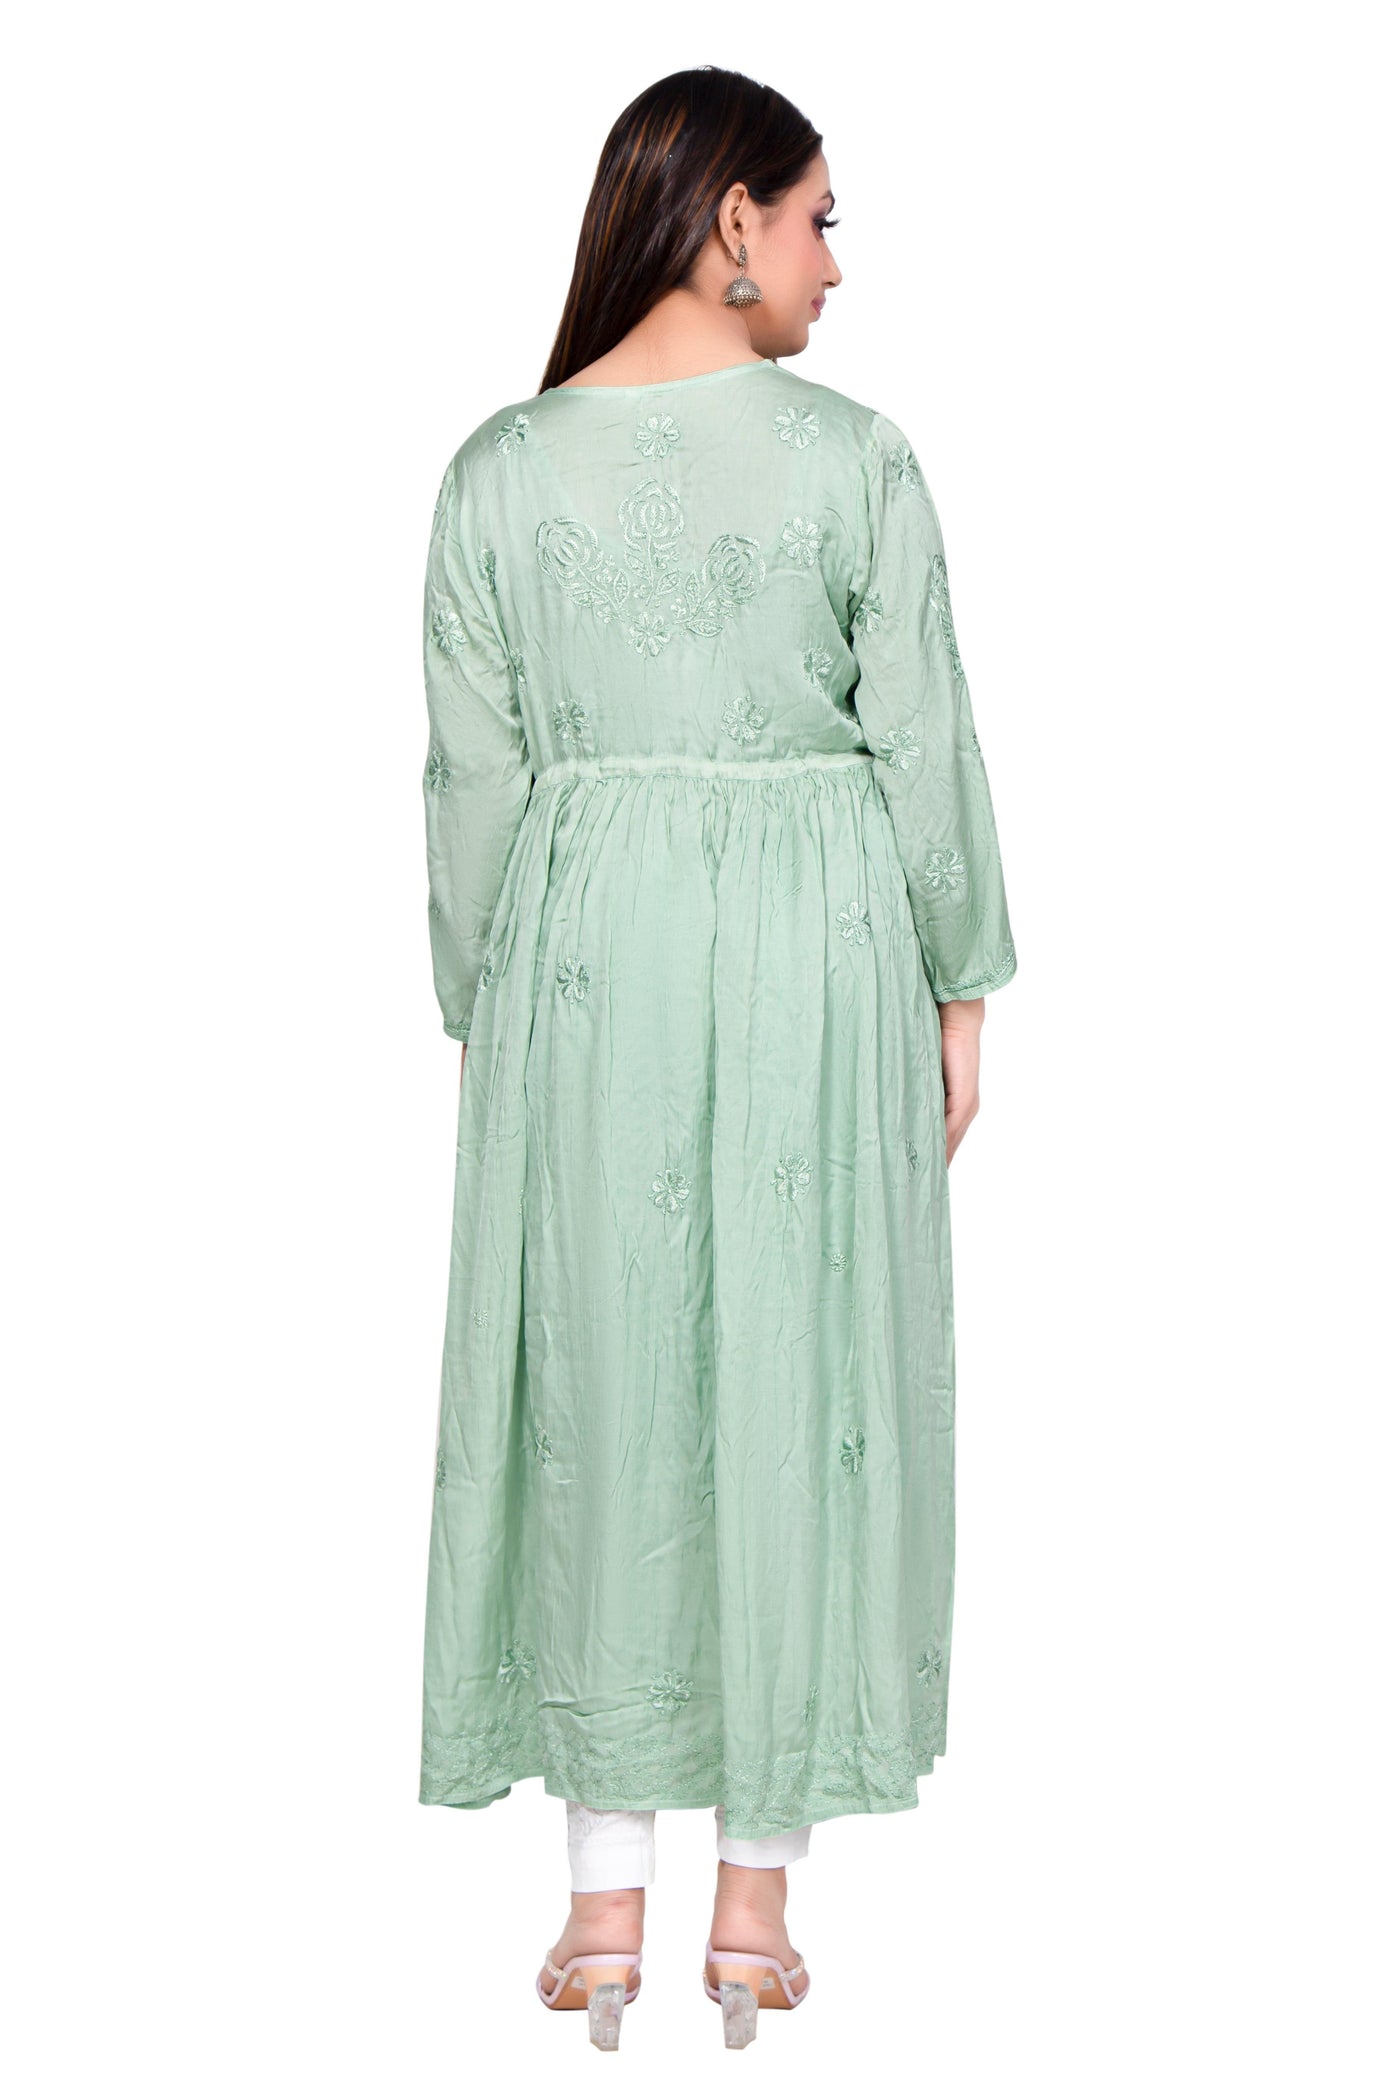 Almas Lifestyle Lucknowi Chikankari Green Modal Koti Style Long Gown - Almas Lifestyle